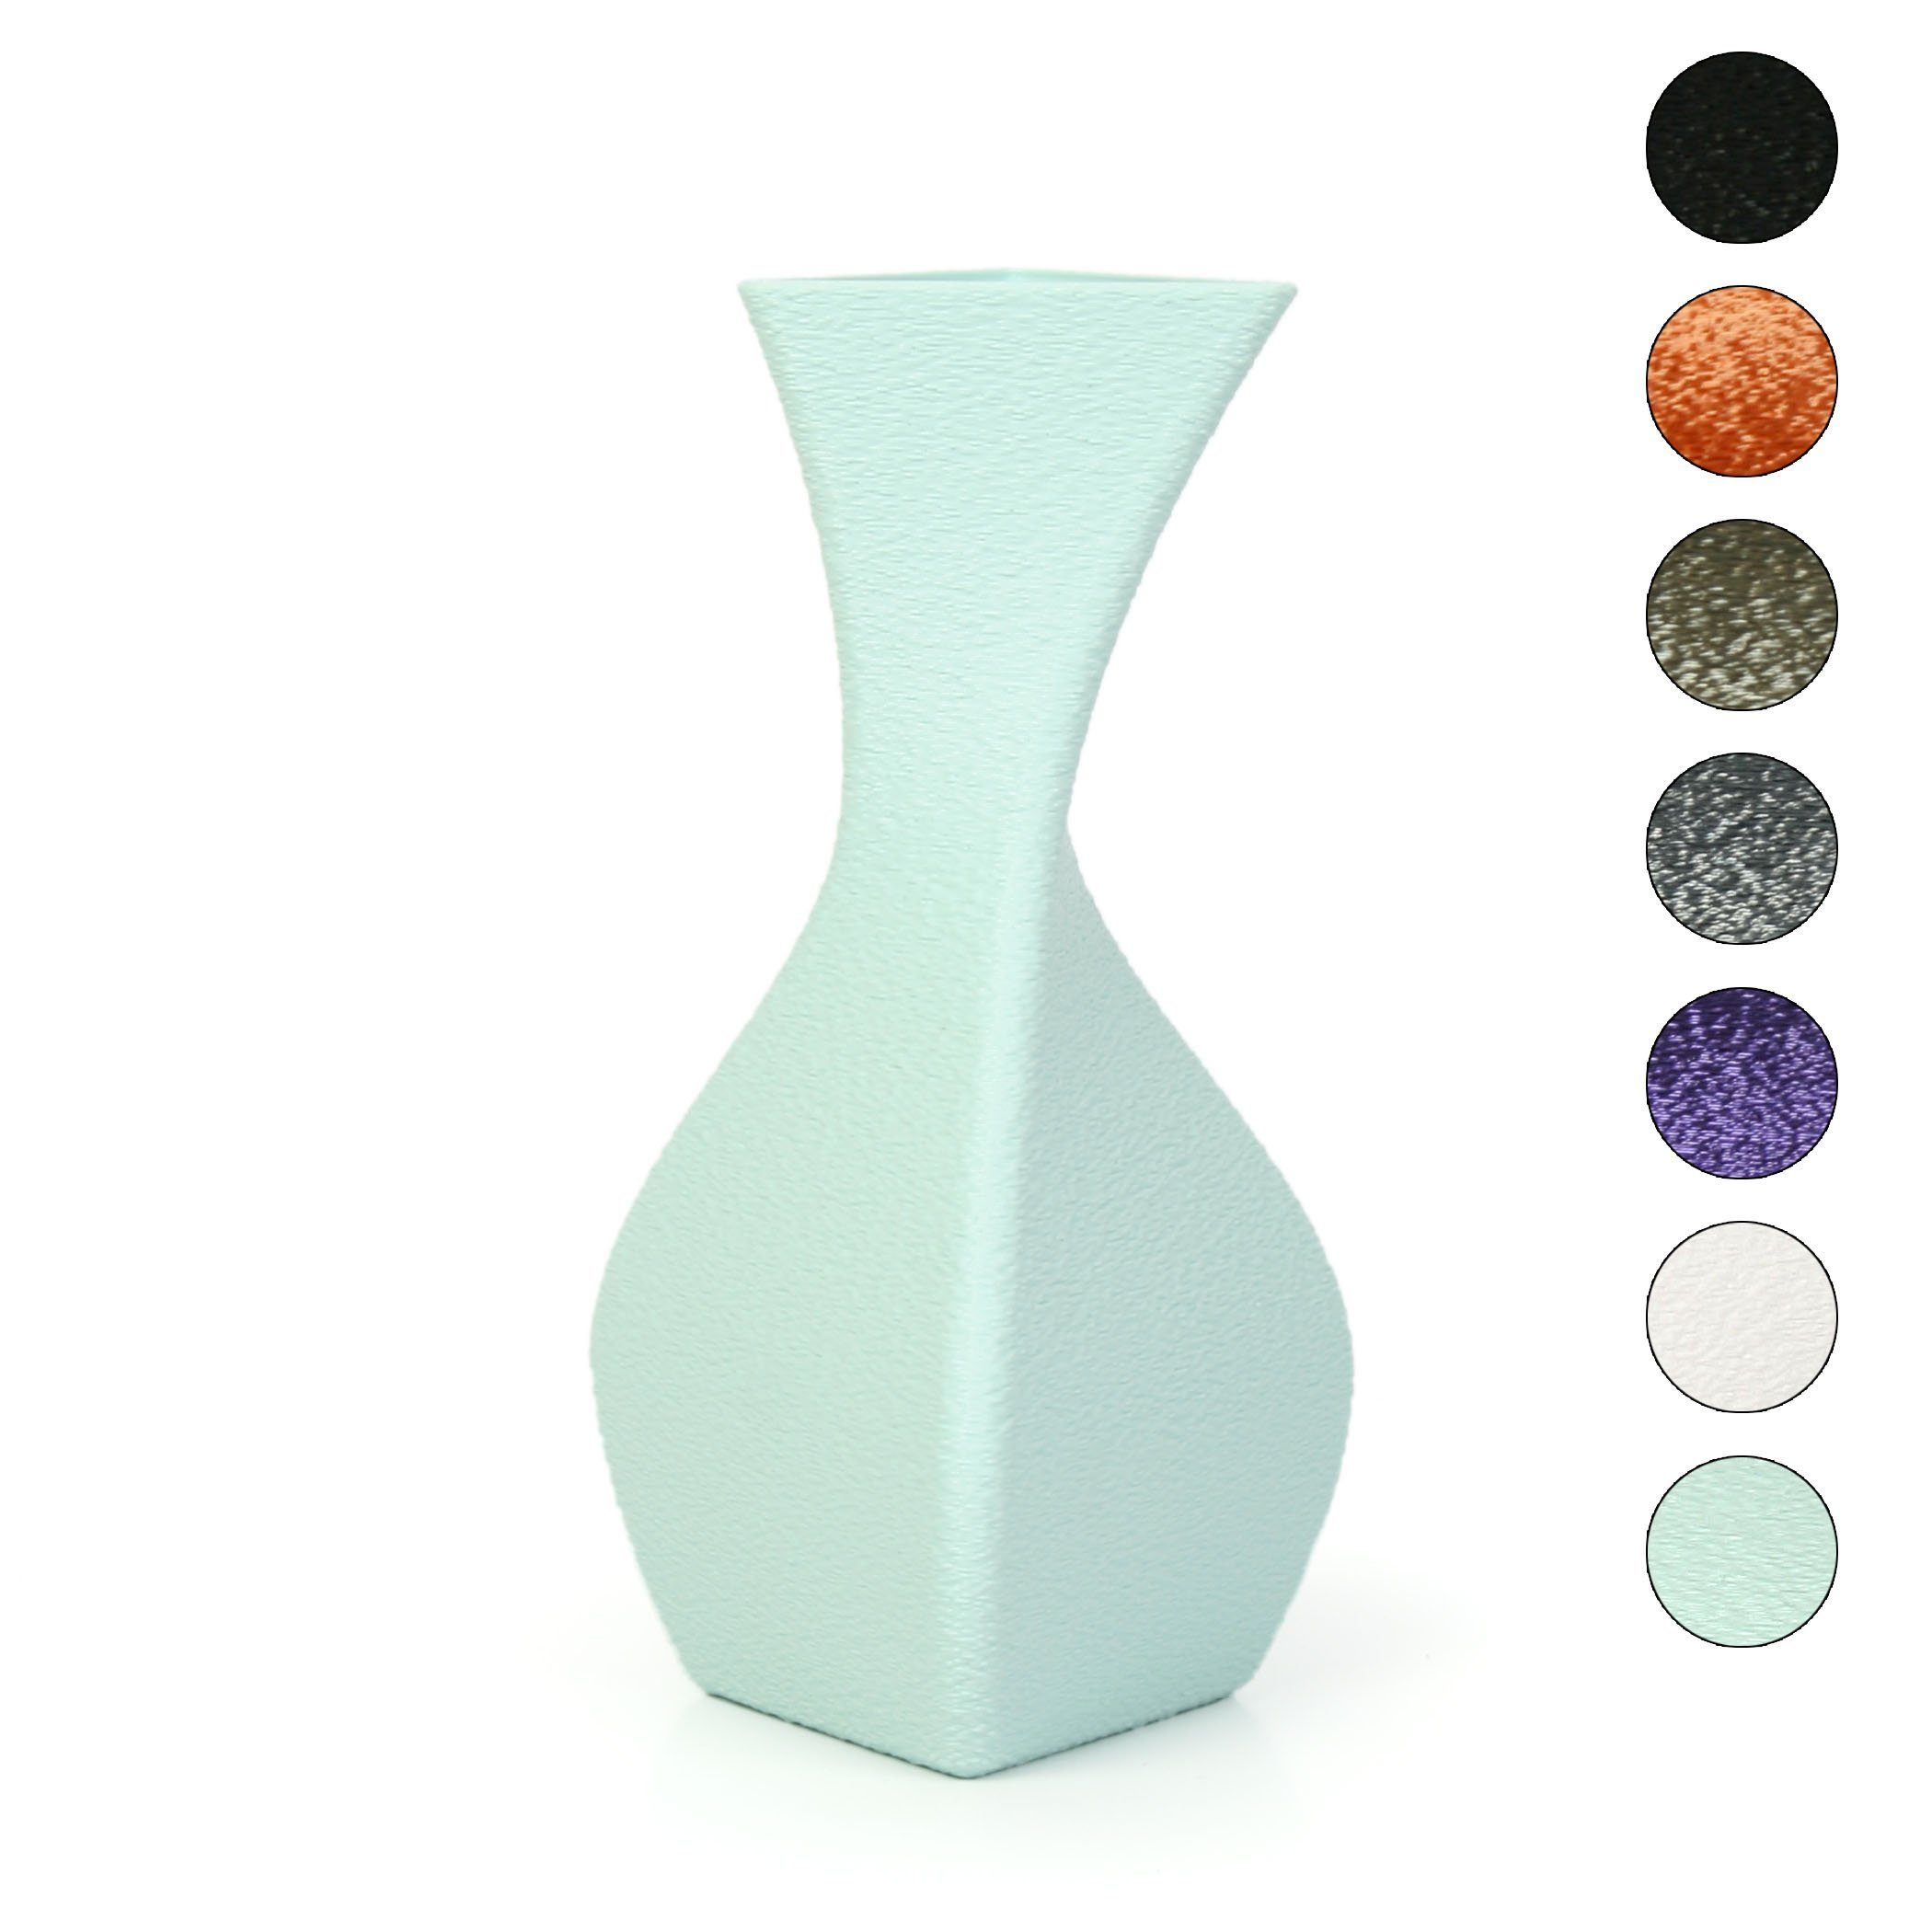 Kreative Feder Dekovase Designer Vase – Dekorative Blumenvase aus Bio-Kunststoff, aus nachwachsenden Rohstoffen; wasserdicht & bruchsicher Water Green